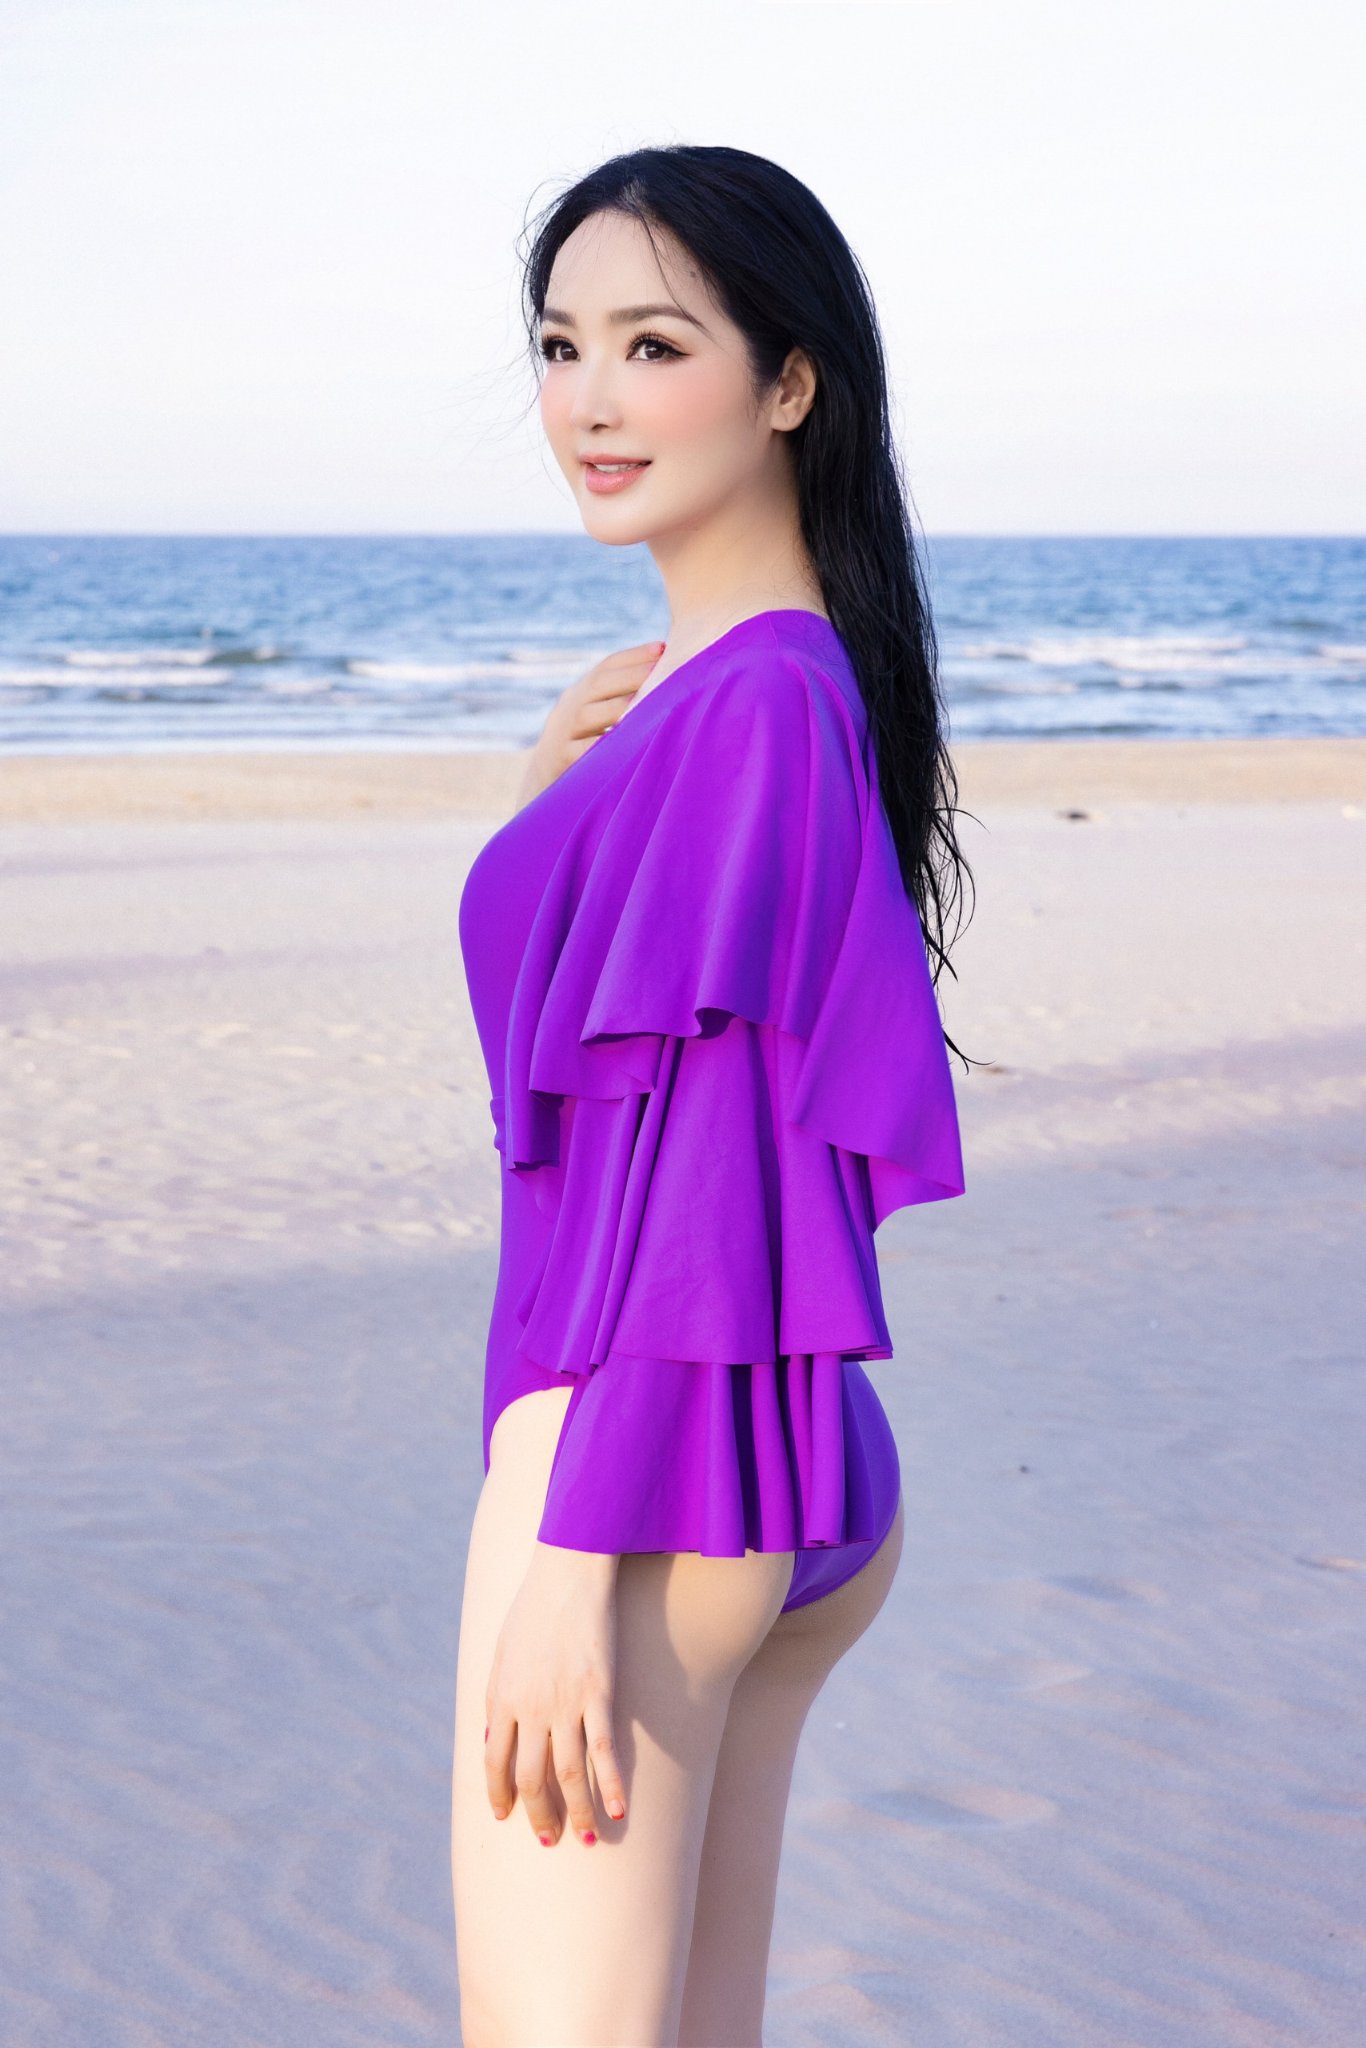 Nền Người đẹp Mặc Bikini Ngồi Bên Hồ Bơi Trong Ngày Hè Mát Mẻ Và Hình ảnh  Để Tải Về Miễn Phí  Pngtree